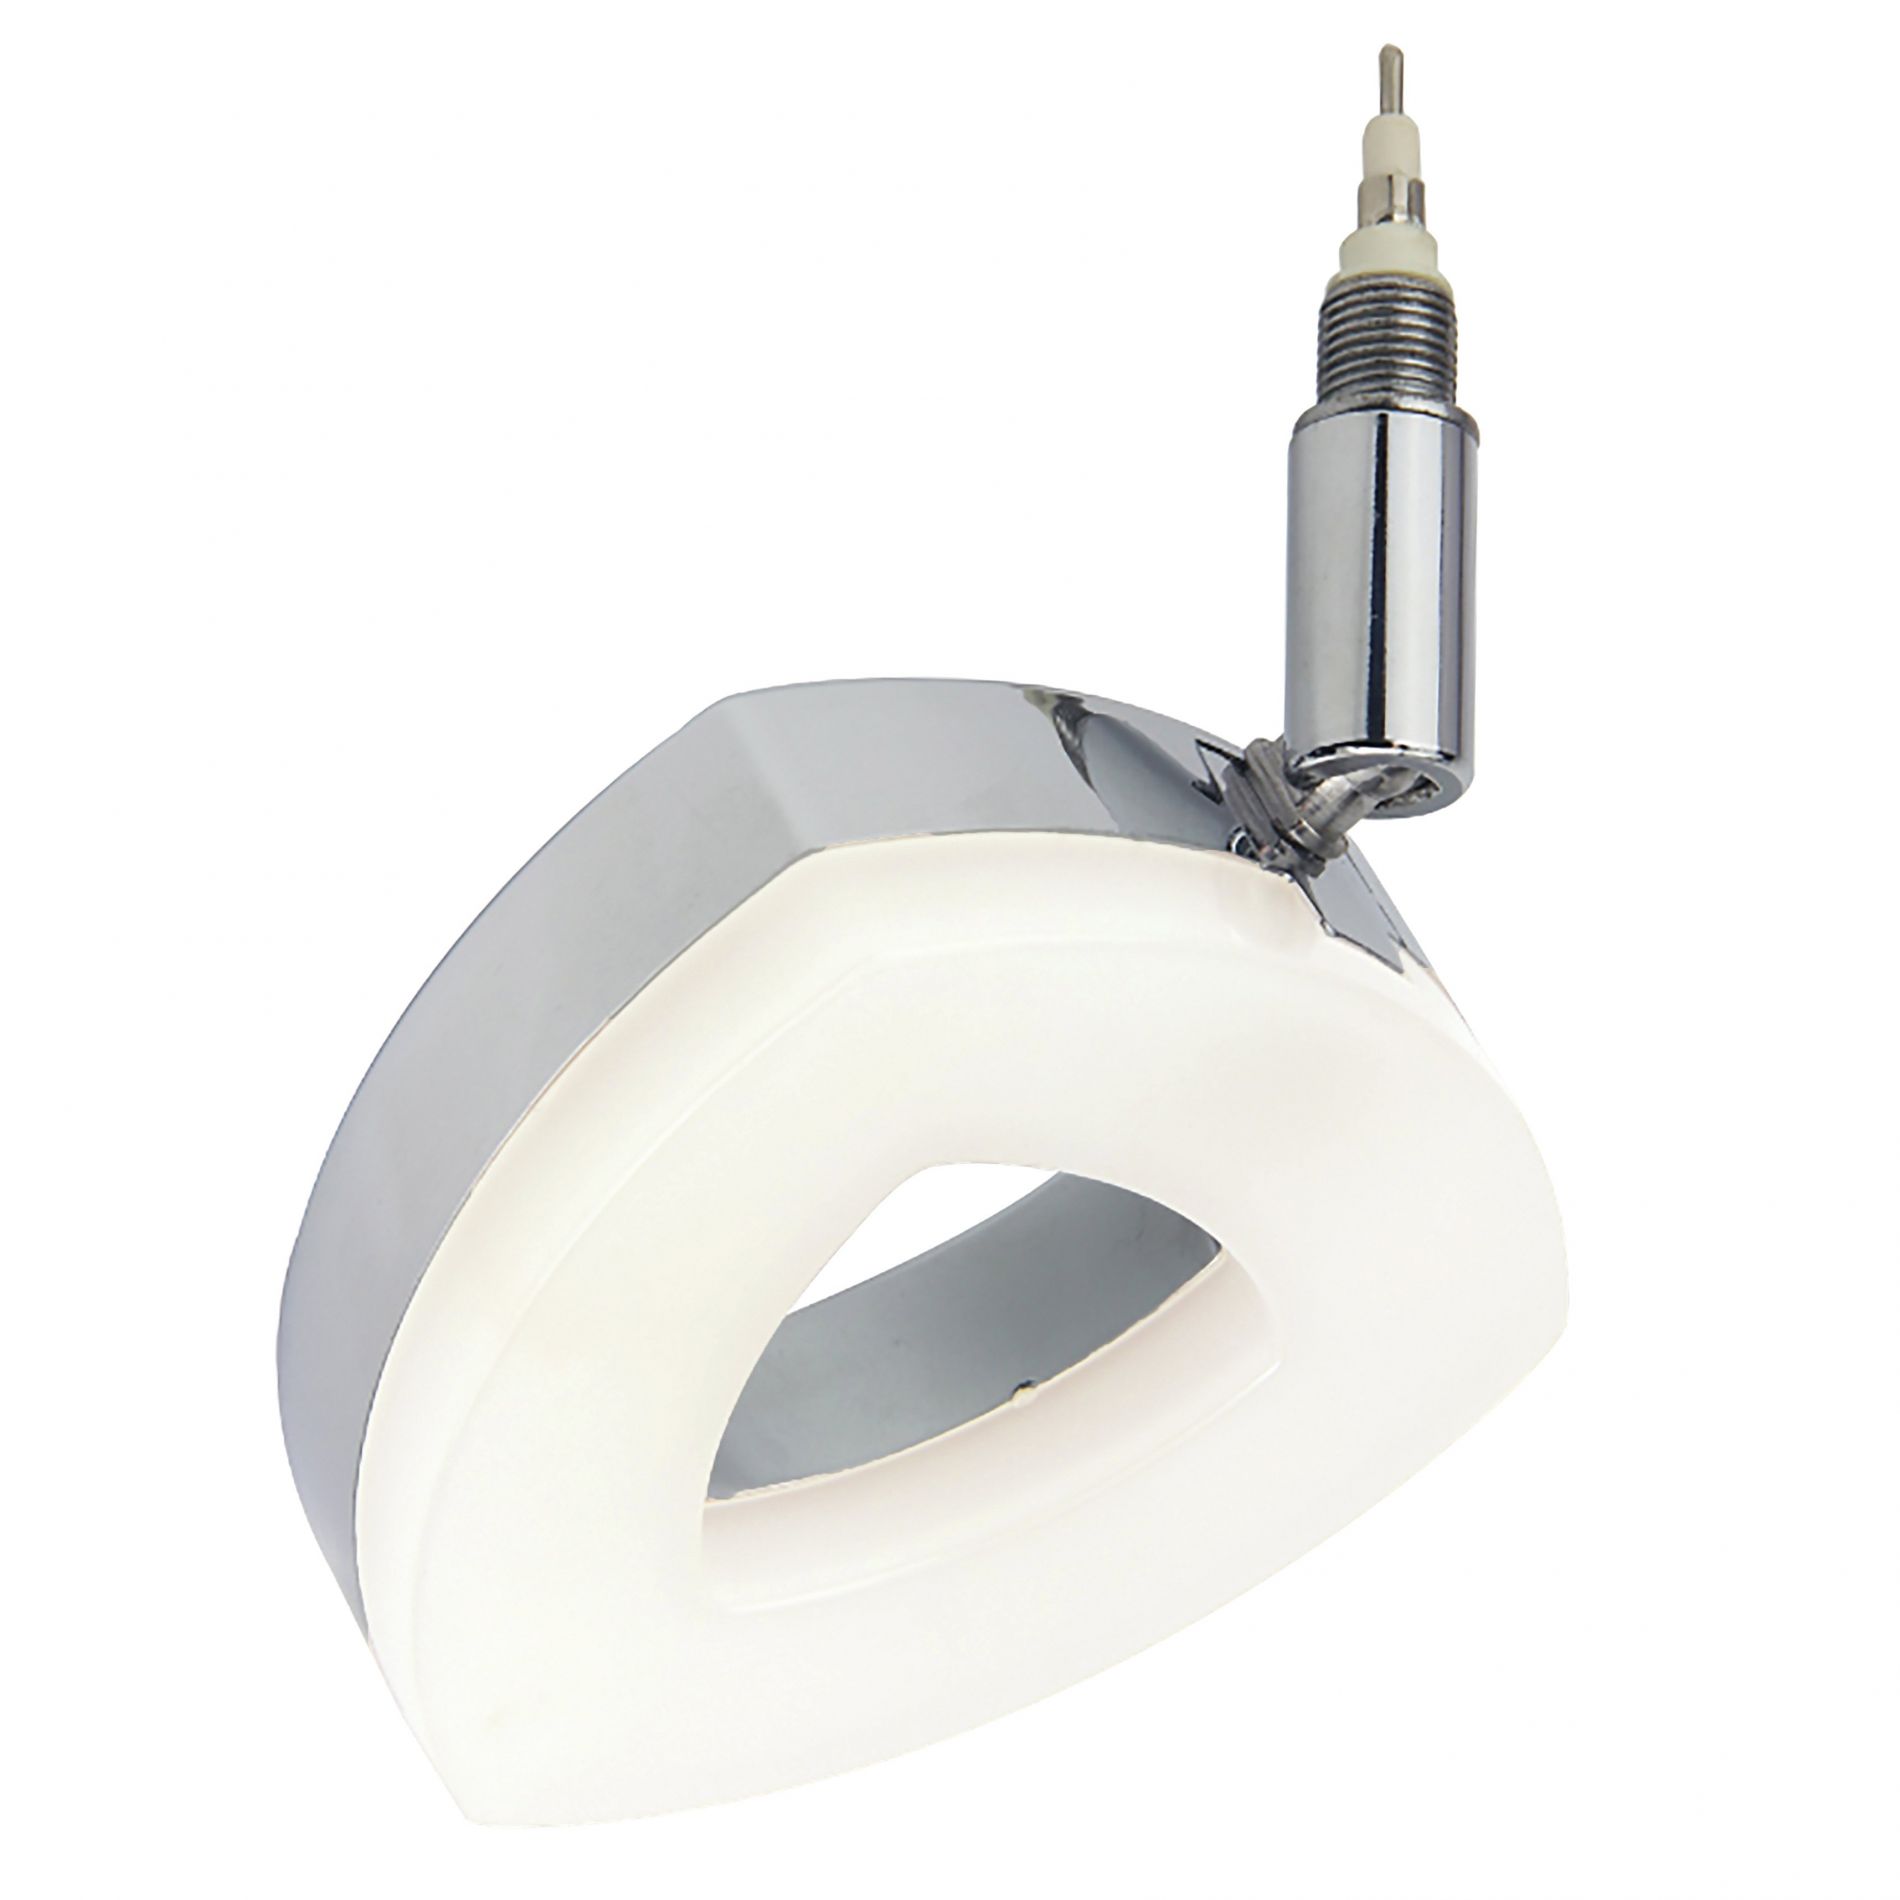 Diffuseur orientable LED triangle REMIXLED argenté/blanc en métal/PVC